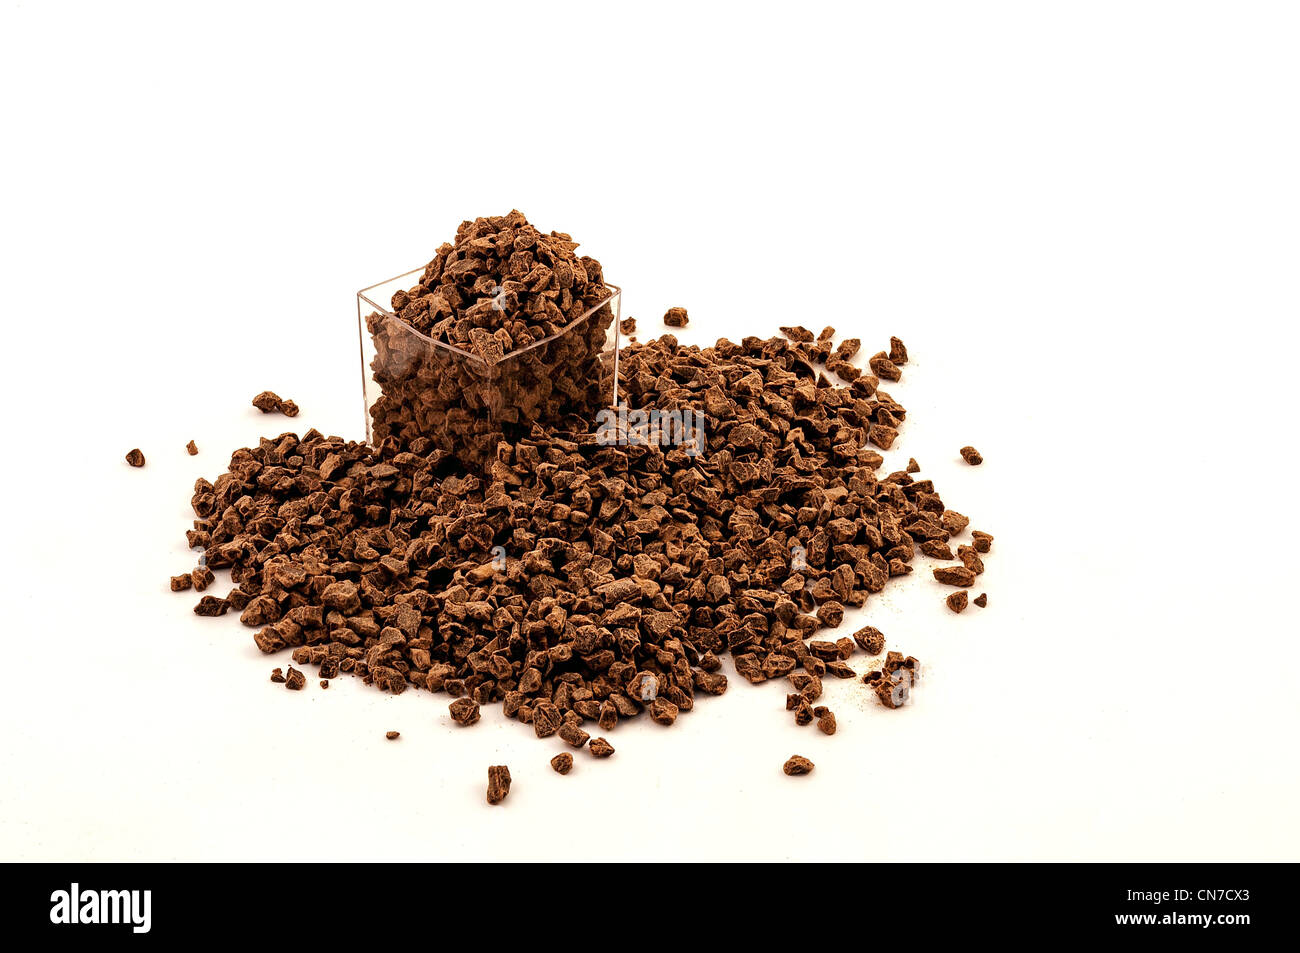 Zerbröckelte Schokolade Zutat Stapeln auf weißem Hintergrund Stockfoto